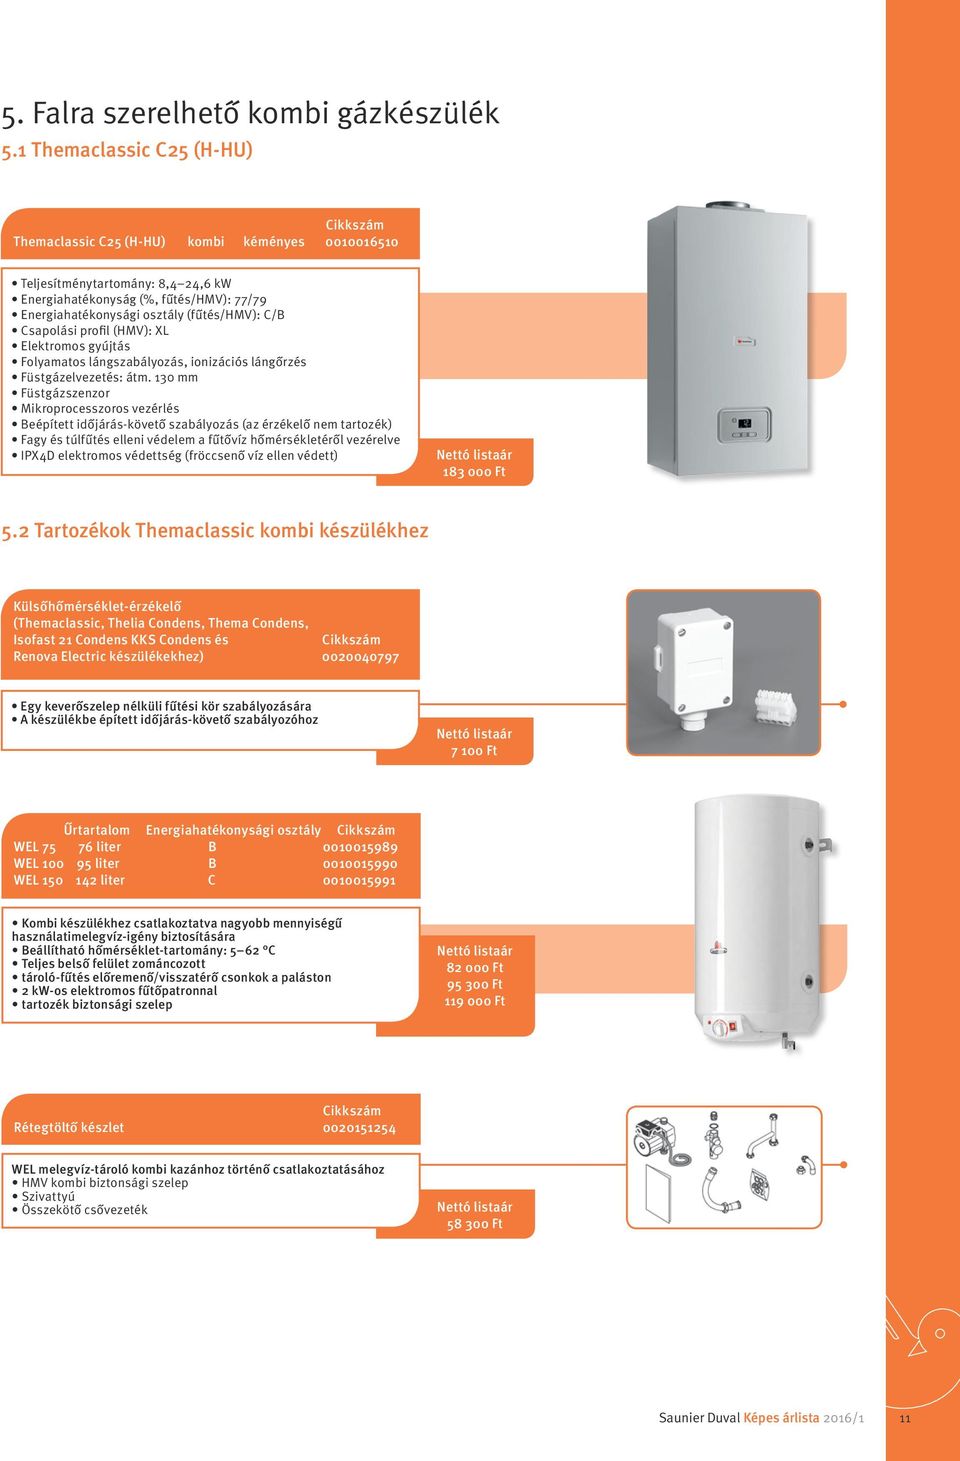 Csapolási profil (HMV): XL Elektromos gyújtás Folyamatos lángszabályozás, ionizációs lángőrzés Füstgázelvezetés: átm.